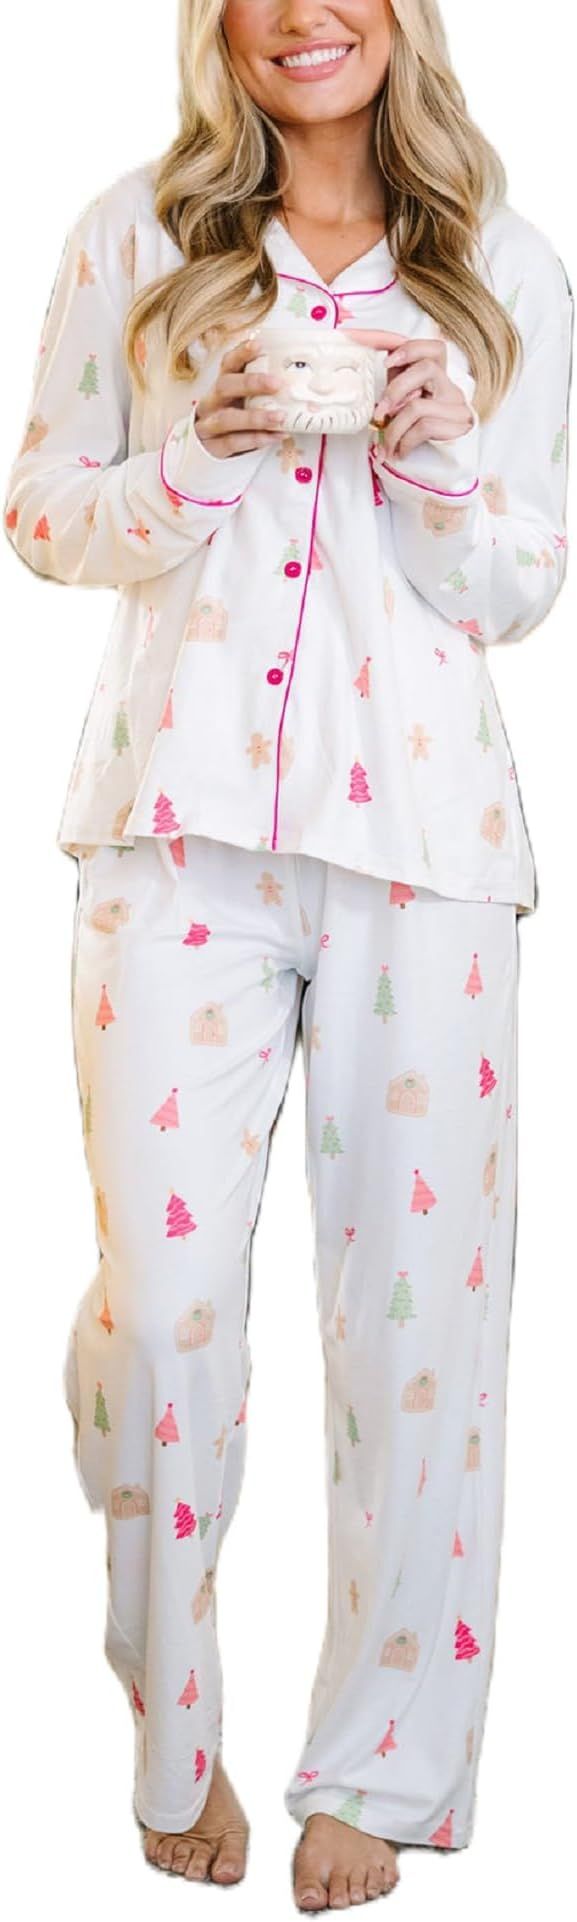 Luckinbaby Women Christmas Pajamas Sets Xmas Long Sleeve Pants Pjs Sleepwear Santa Claus Printed ... | Amazon (US)